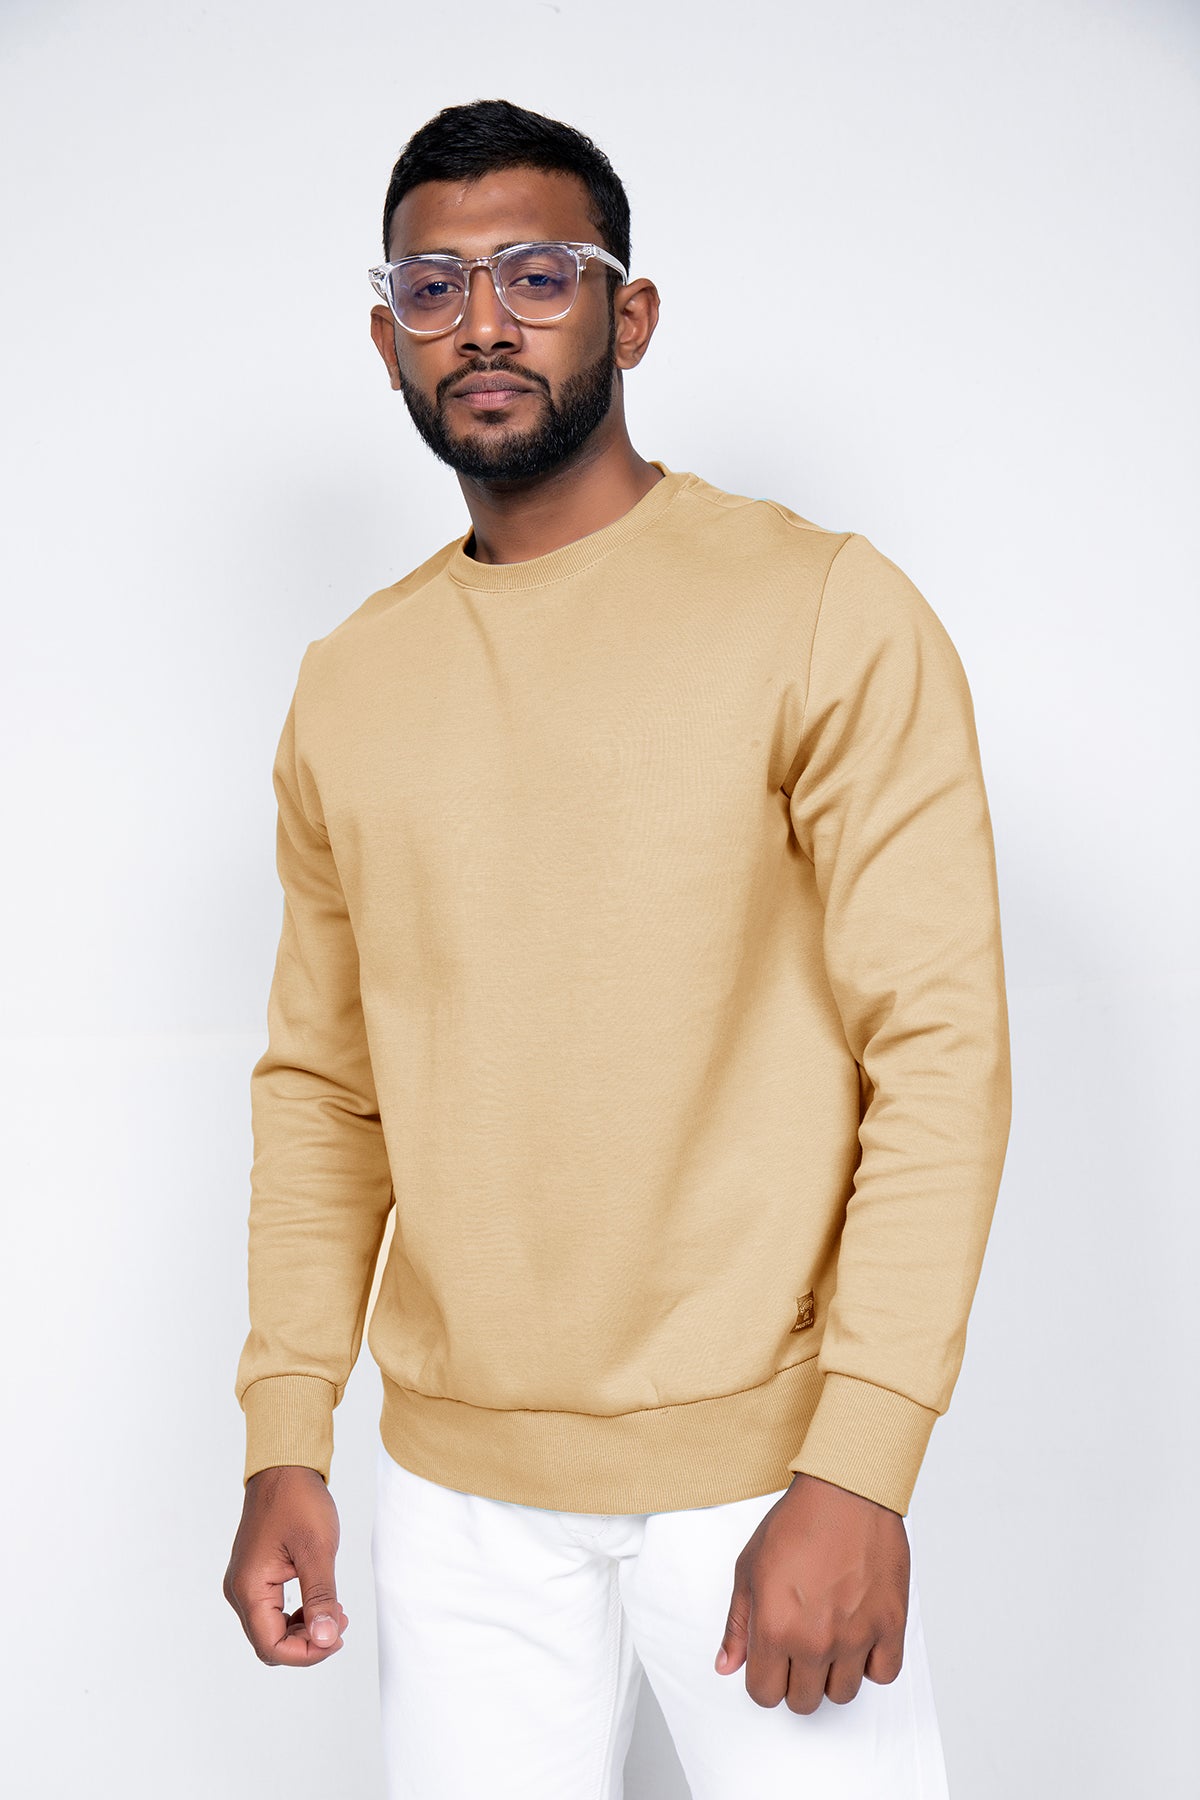 Hustle Men's Long Sleeve Casual Sweater